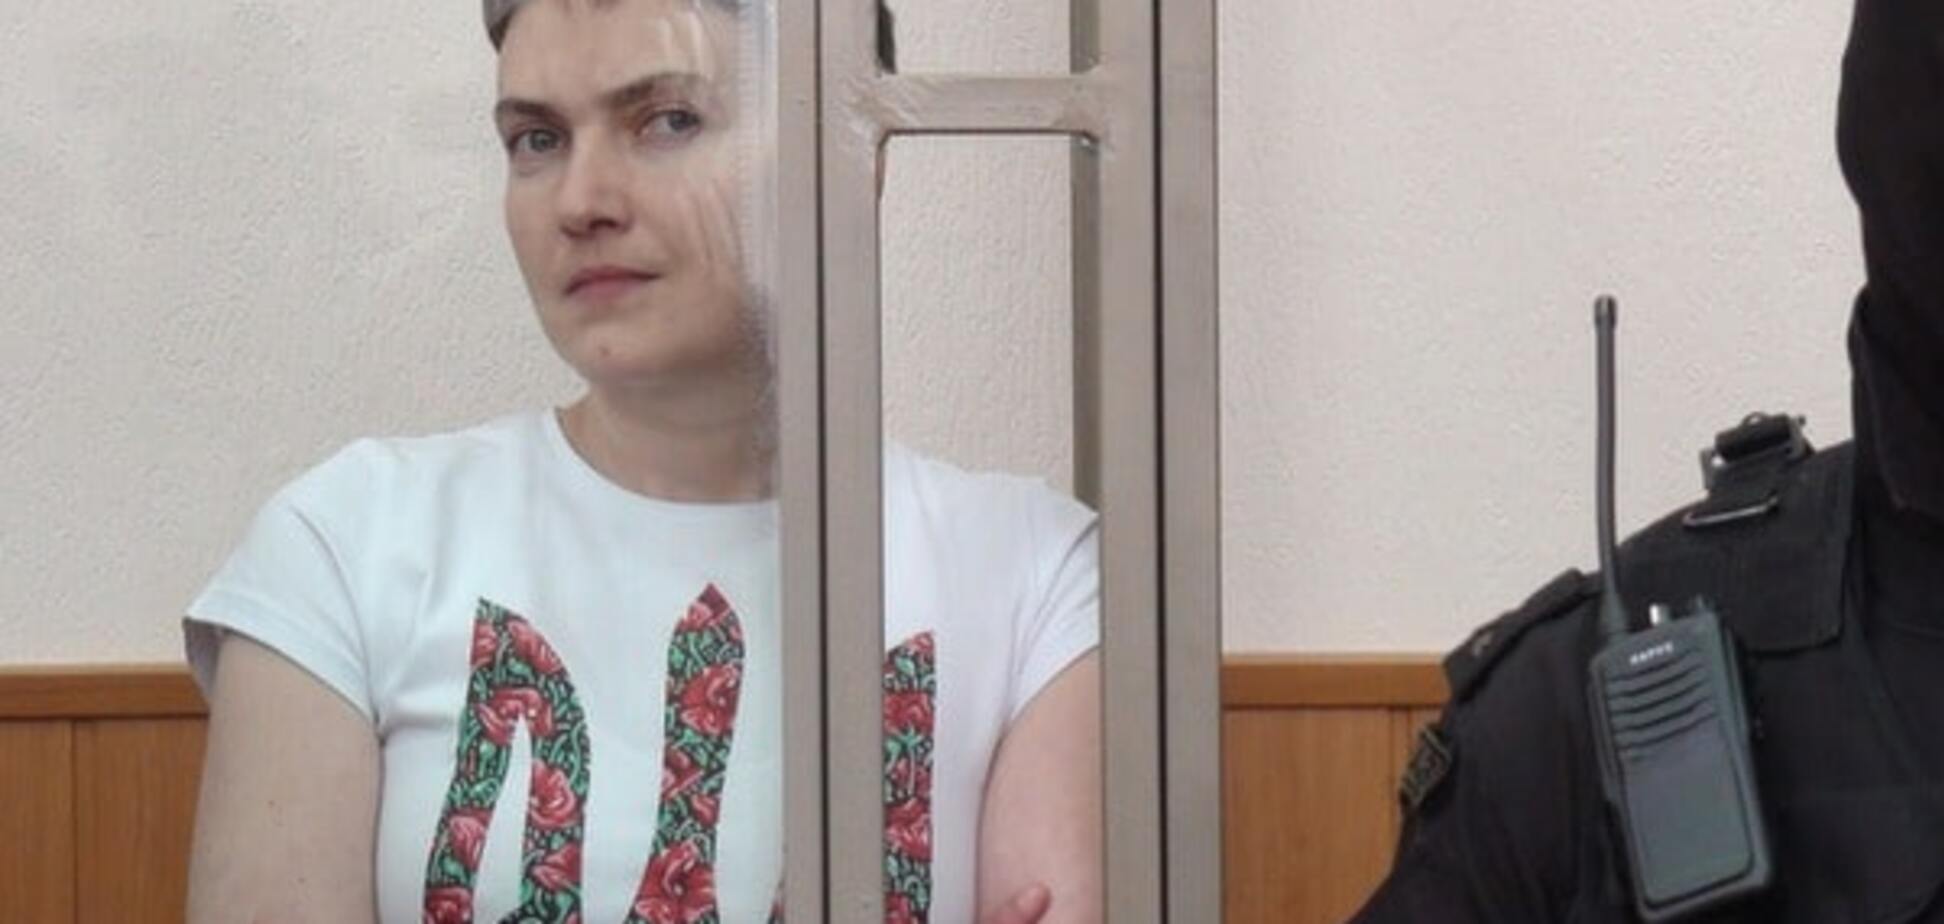 Савченко повинні звільнити згідно з Мінськими угодами - генсек ООН